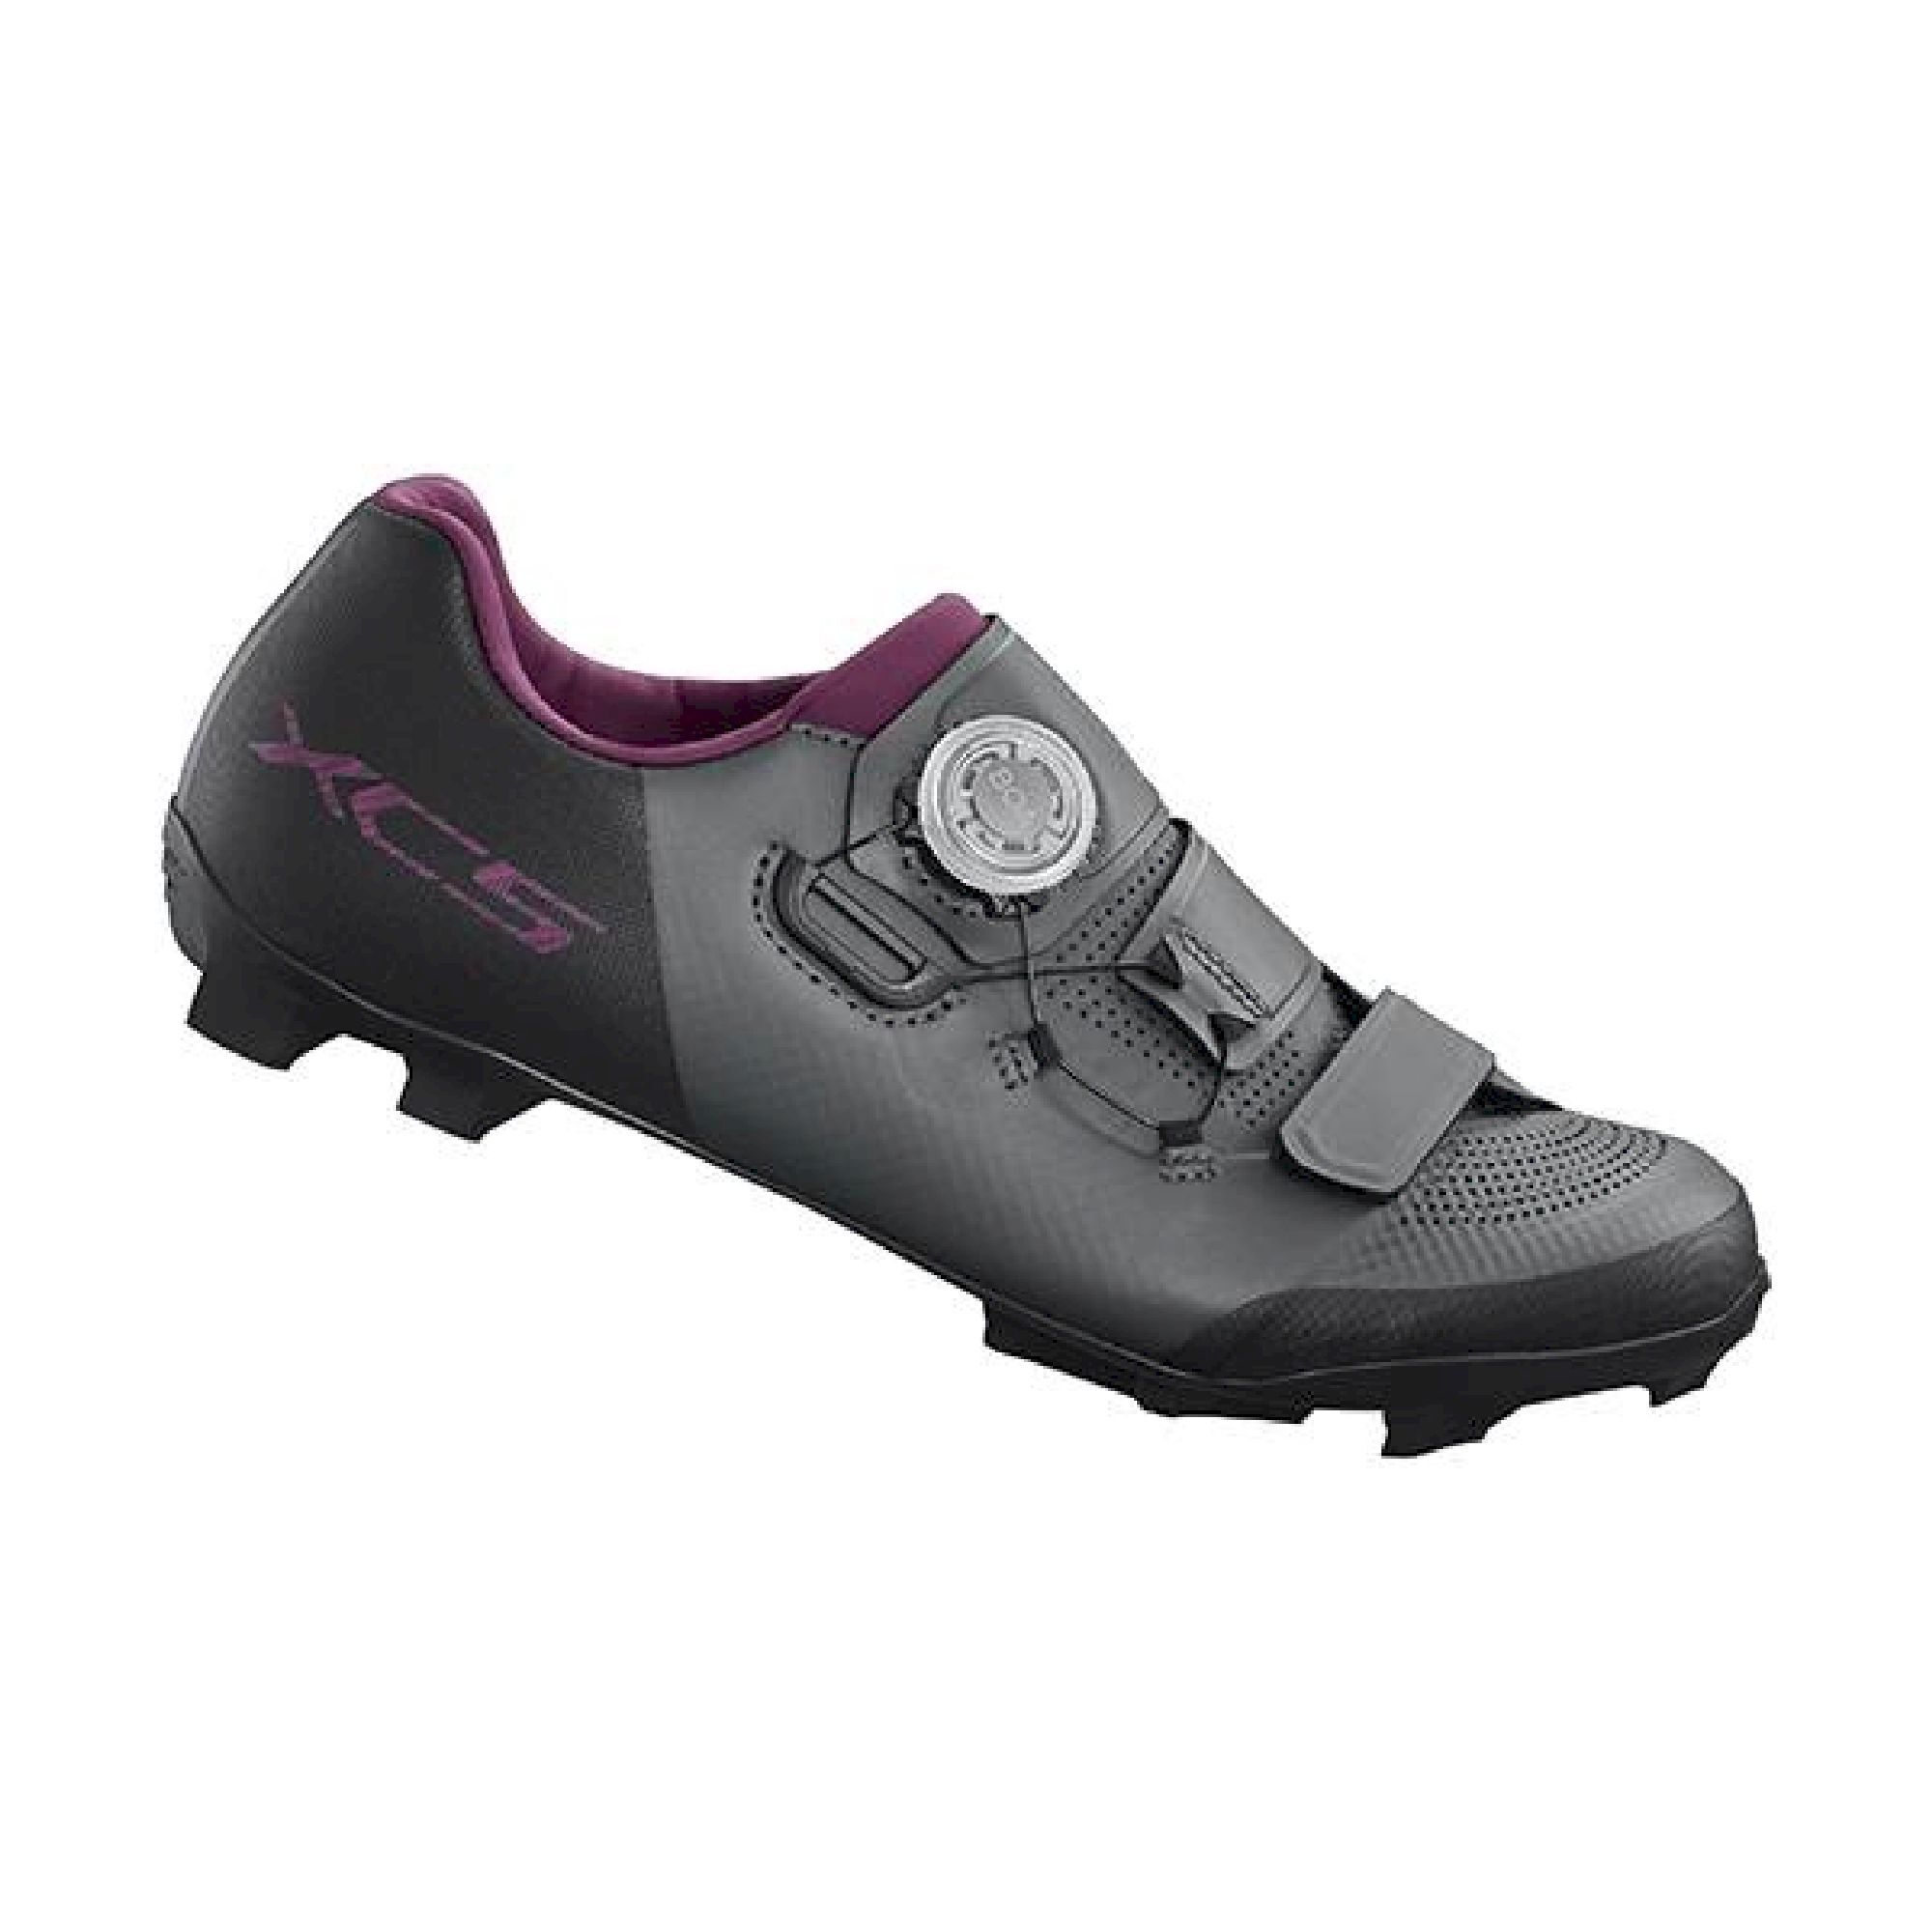 Shimano XC502 - Mountain Bike shoes - Women's